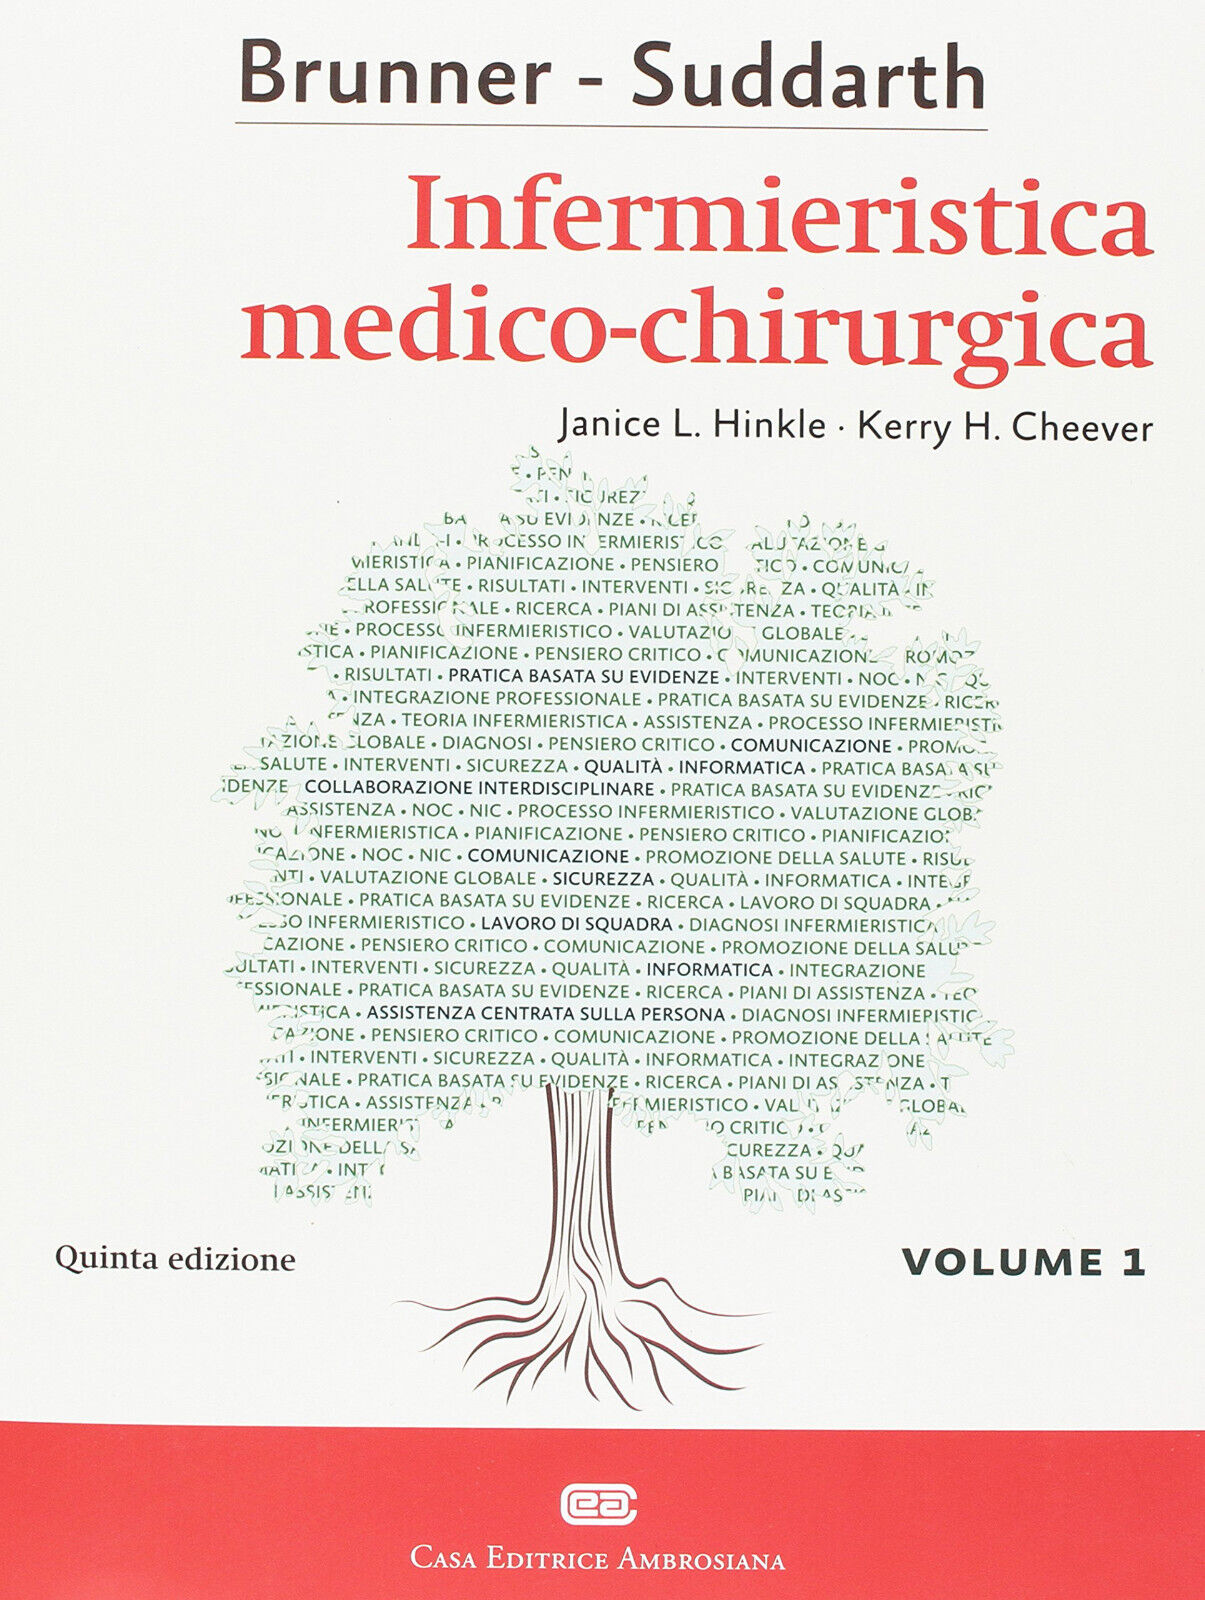 Brunner & Suddarth. Infermieristica medico-chirurgica (Vol. 1) - CEA, 2017